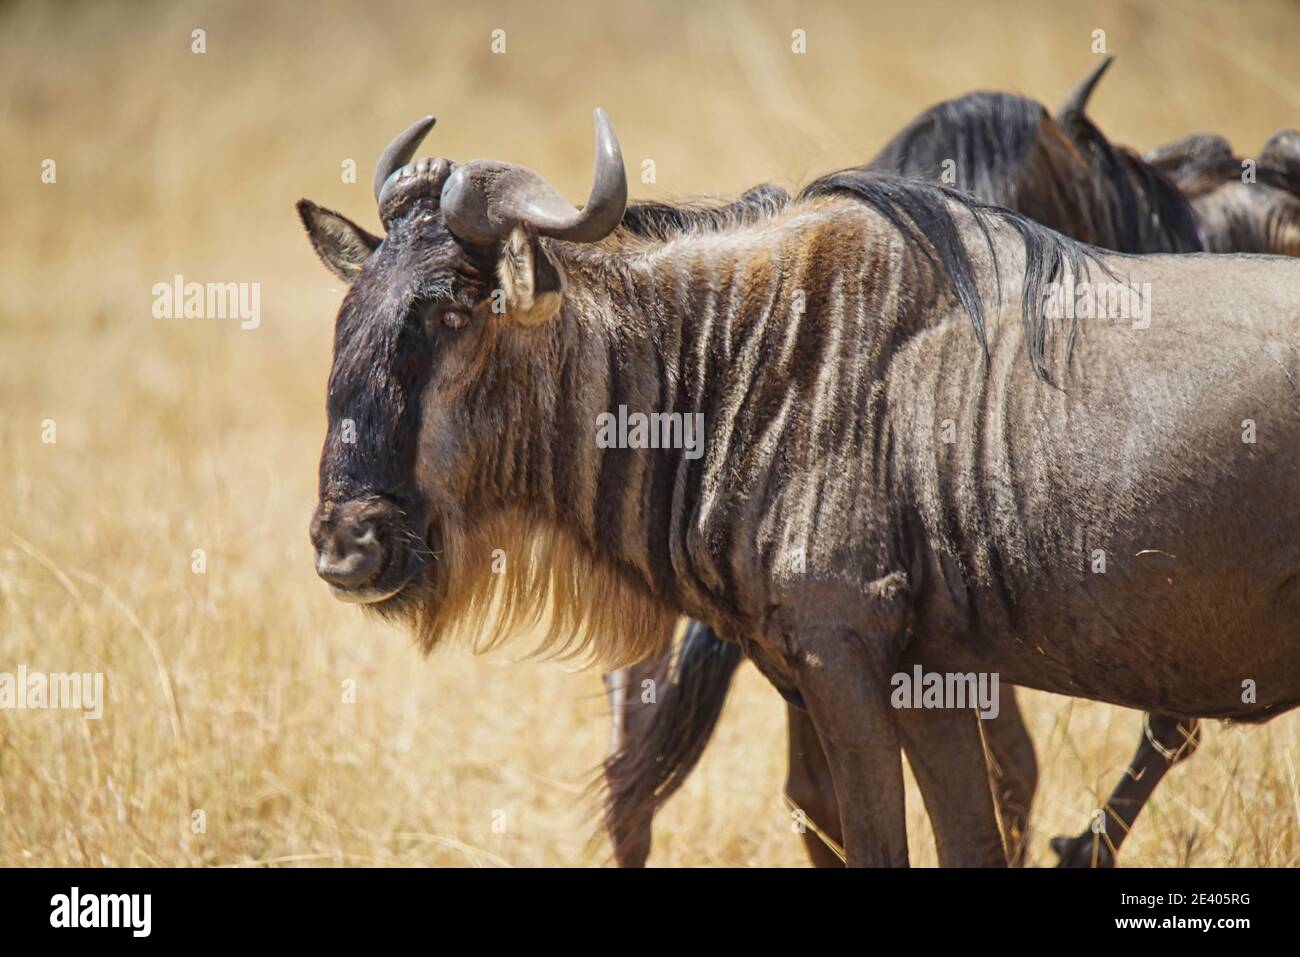 Le plus sauvage se tenait sur l'herbe sèche, regardant dans l'appareil photo avec un œil. Un grand nombre d'animaux migrent vers le refuge national de faune de Masai Mara Banque D'Images